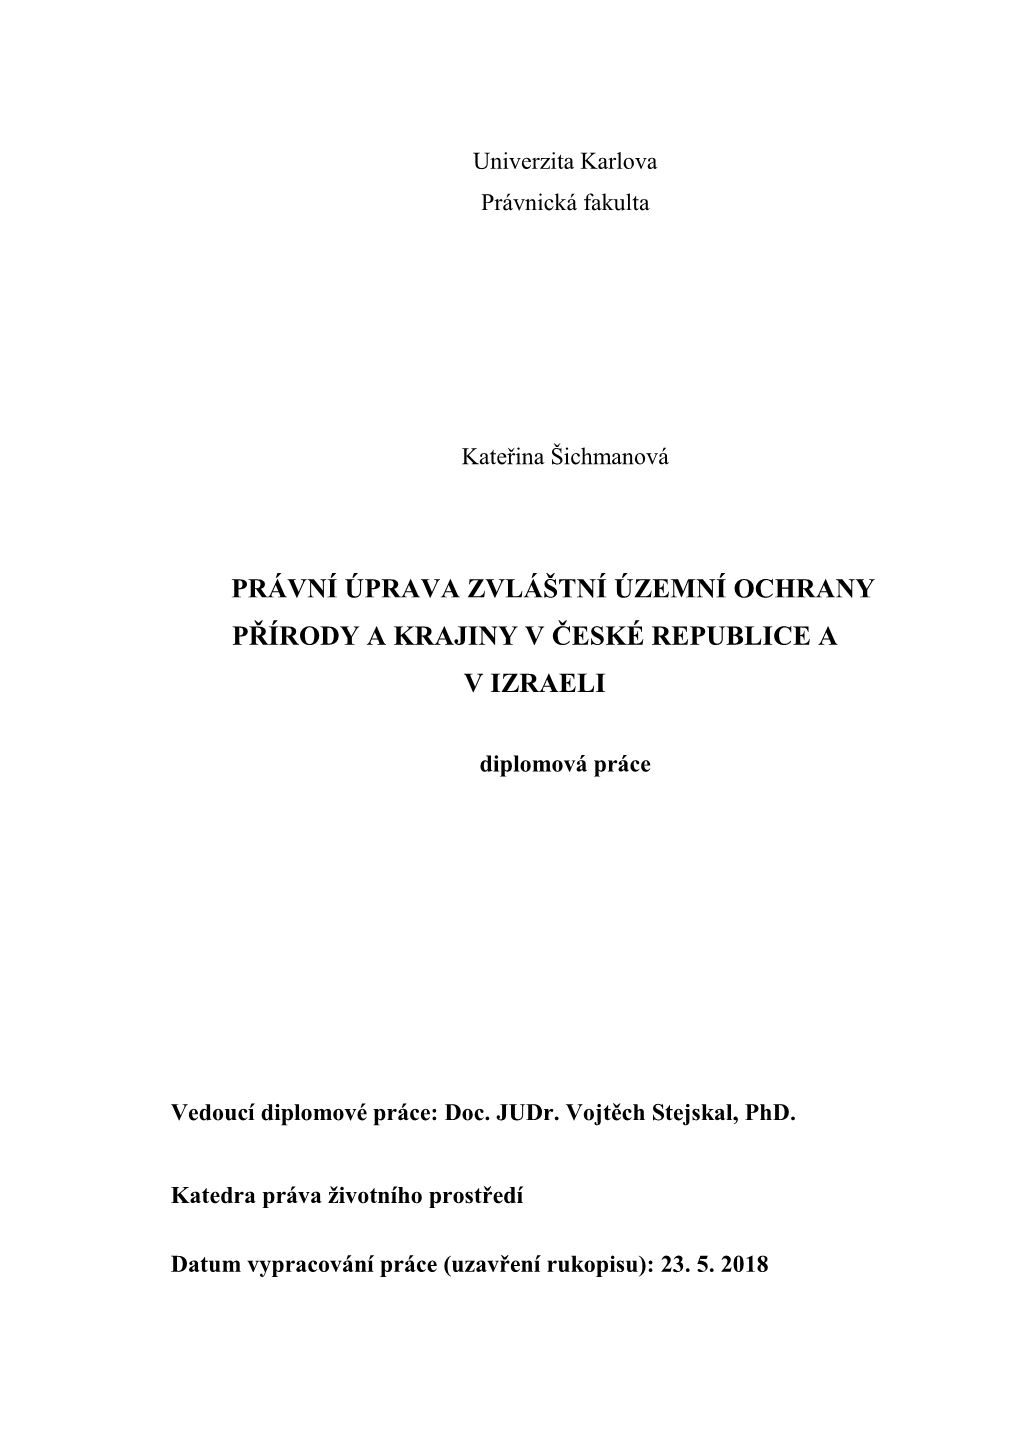 Právní Úprava Zvláštní Územní Ochrany Přírody a Krajiny V České Republice a V Izraeli